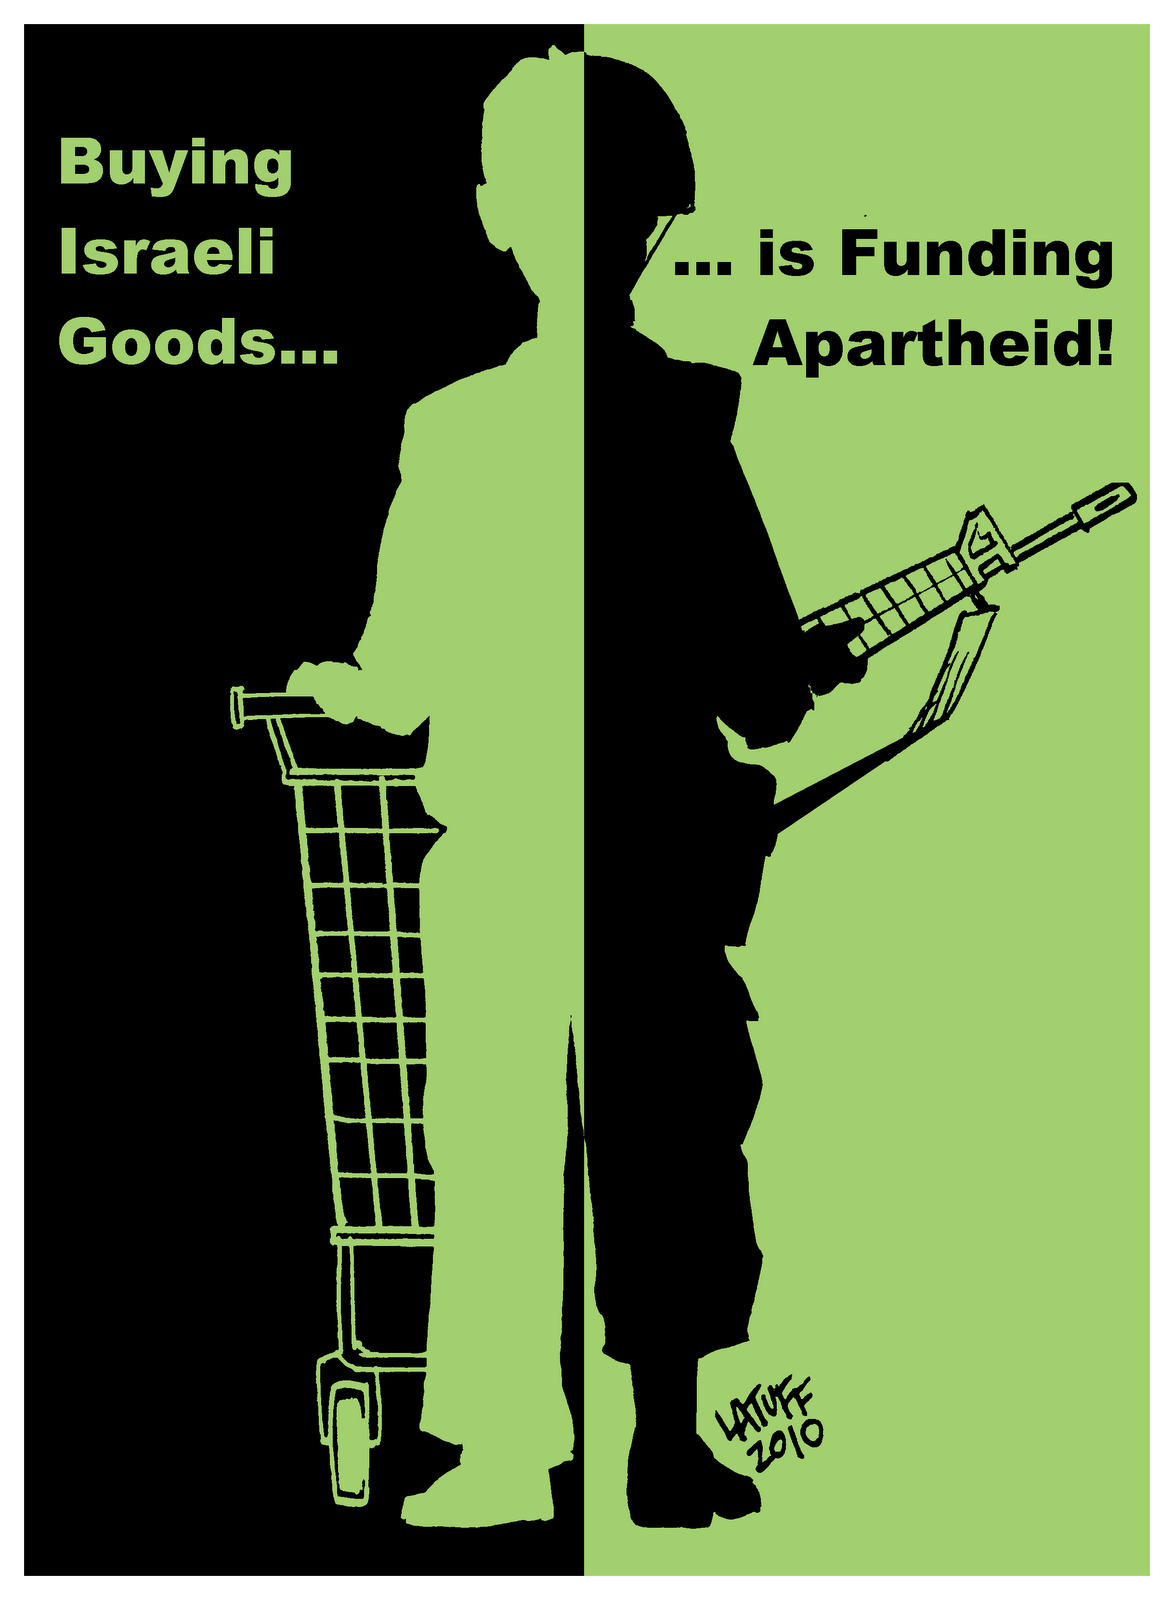 http://2.bp.blogspot.com/-pgwBSya6KDk/TfZTBzamurI/AAAAAAAANQo/YfKQ8bp2ZO0/s1600/buying_israeli_goods_is_funding_apartheid_2.gif